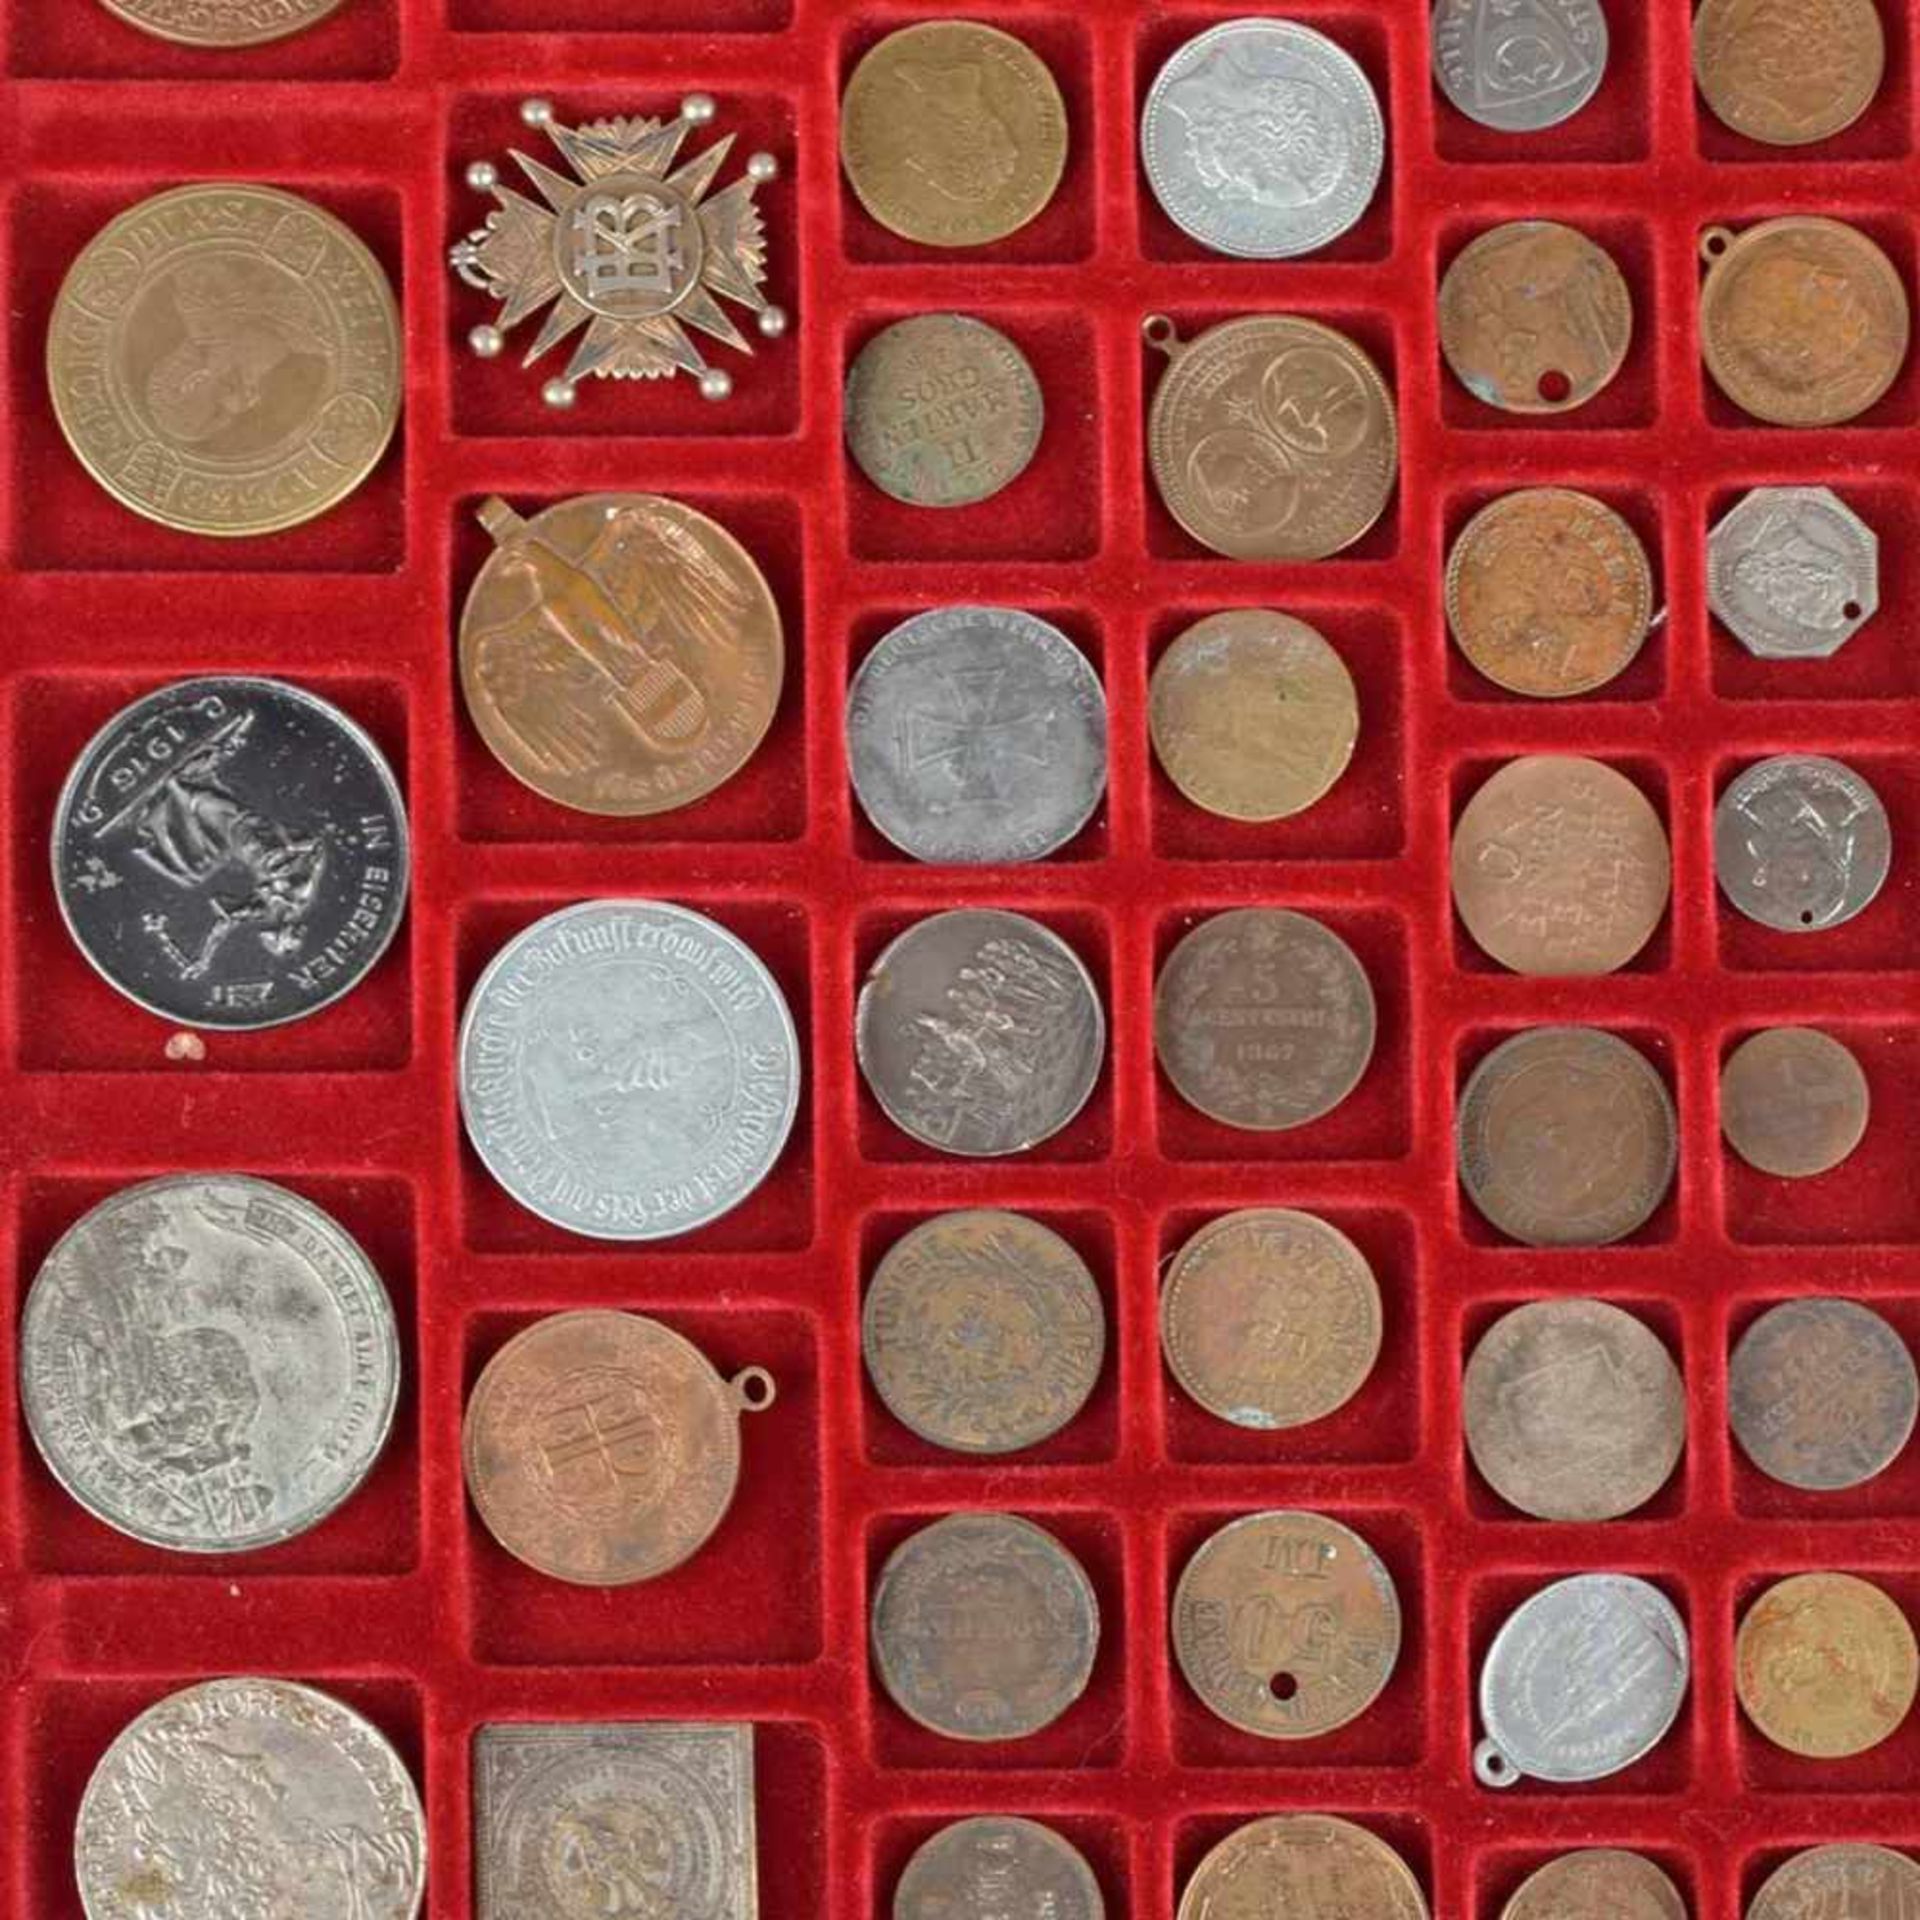 Konvolut Münzen, Medaillen und Auszeichnung insg. ca. 45 versch. Ausgaben quer durch die